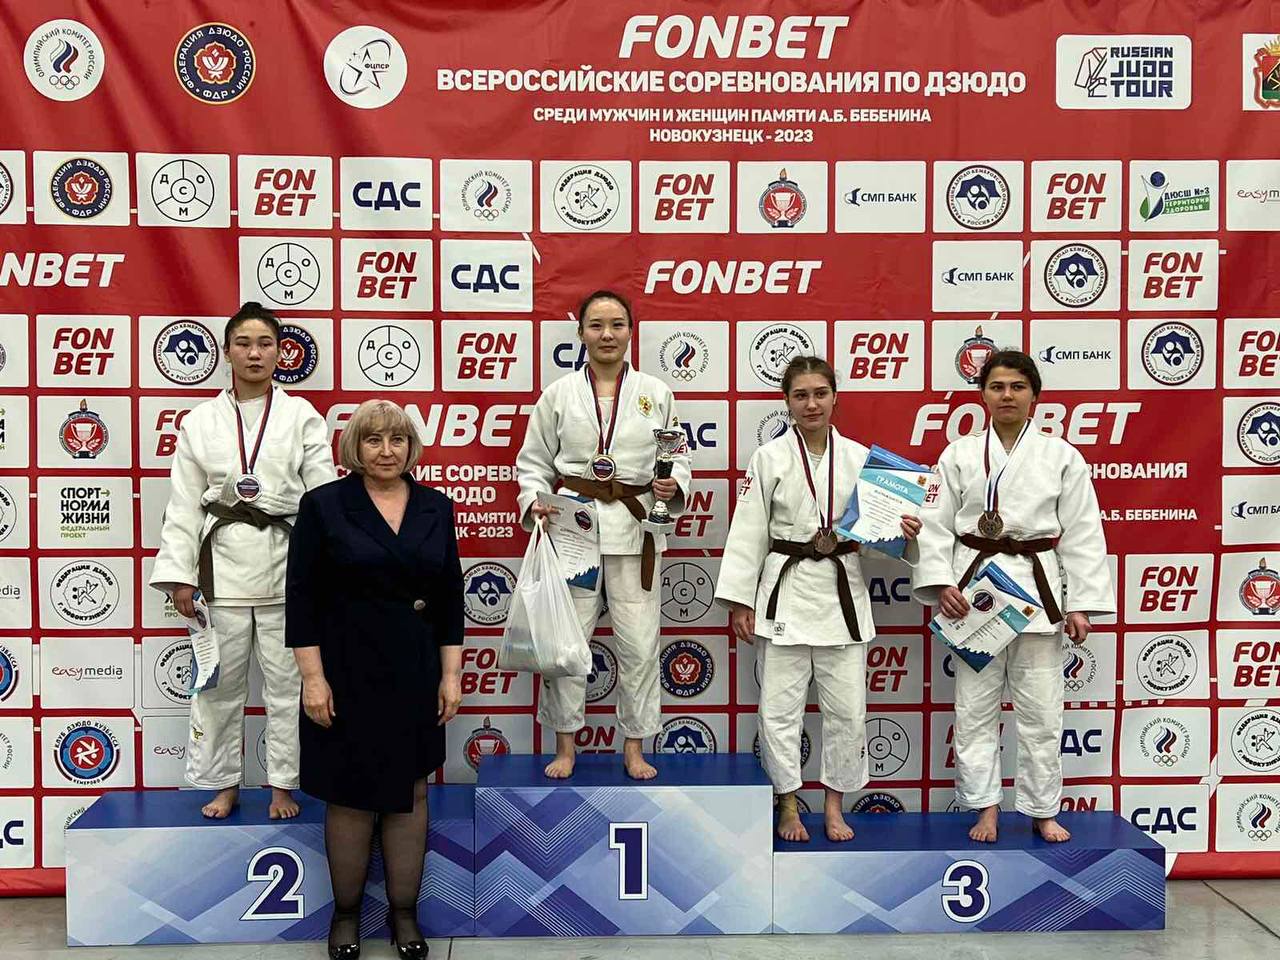 Дзюдоистка из Бурятии завоевала золото на Всероссийском соревновании